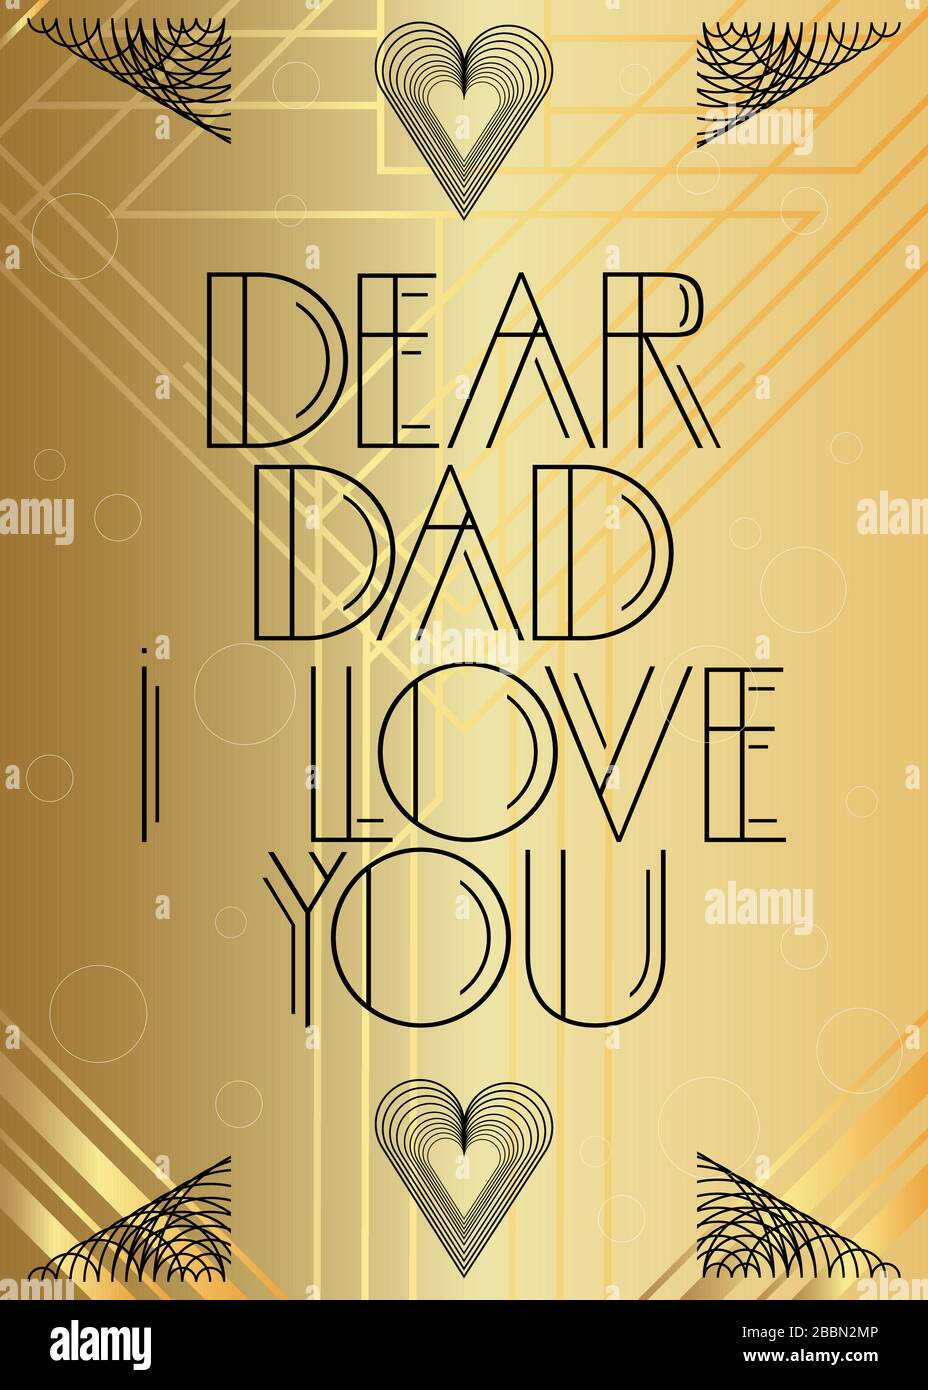 Art Deco Dear Dad I Love You Text. Dekorative Grußkarte, Schild mit Vintage-Buchstaben. Stock Vektor